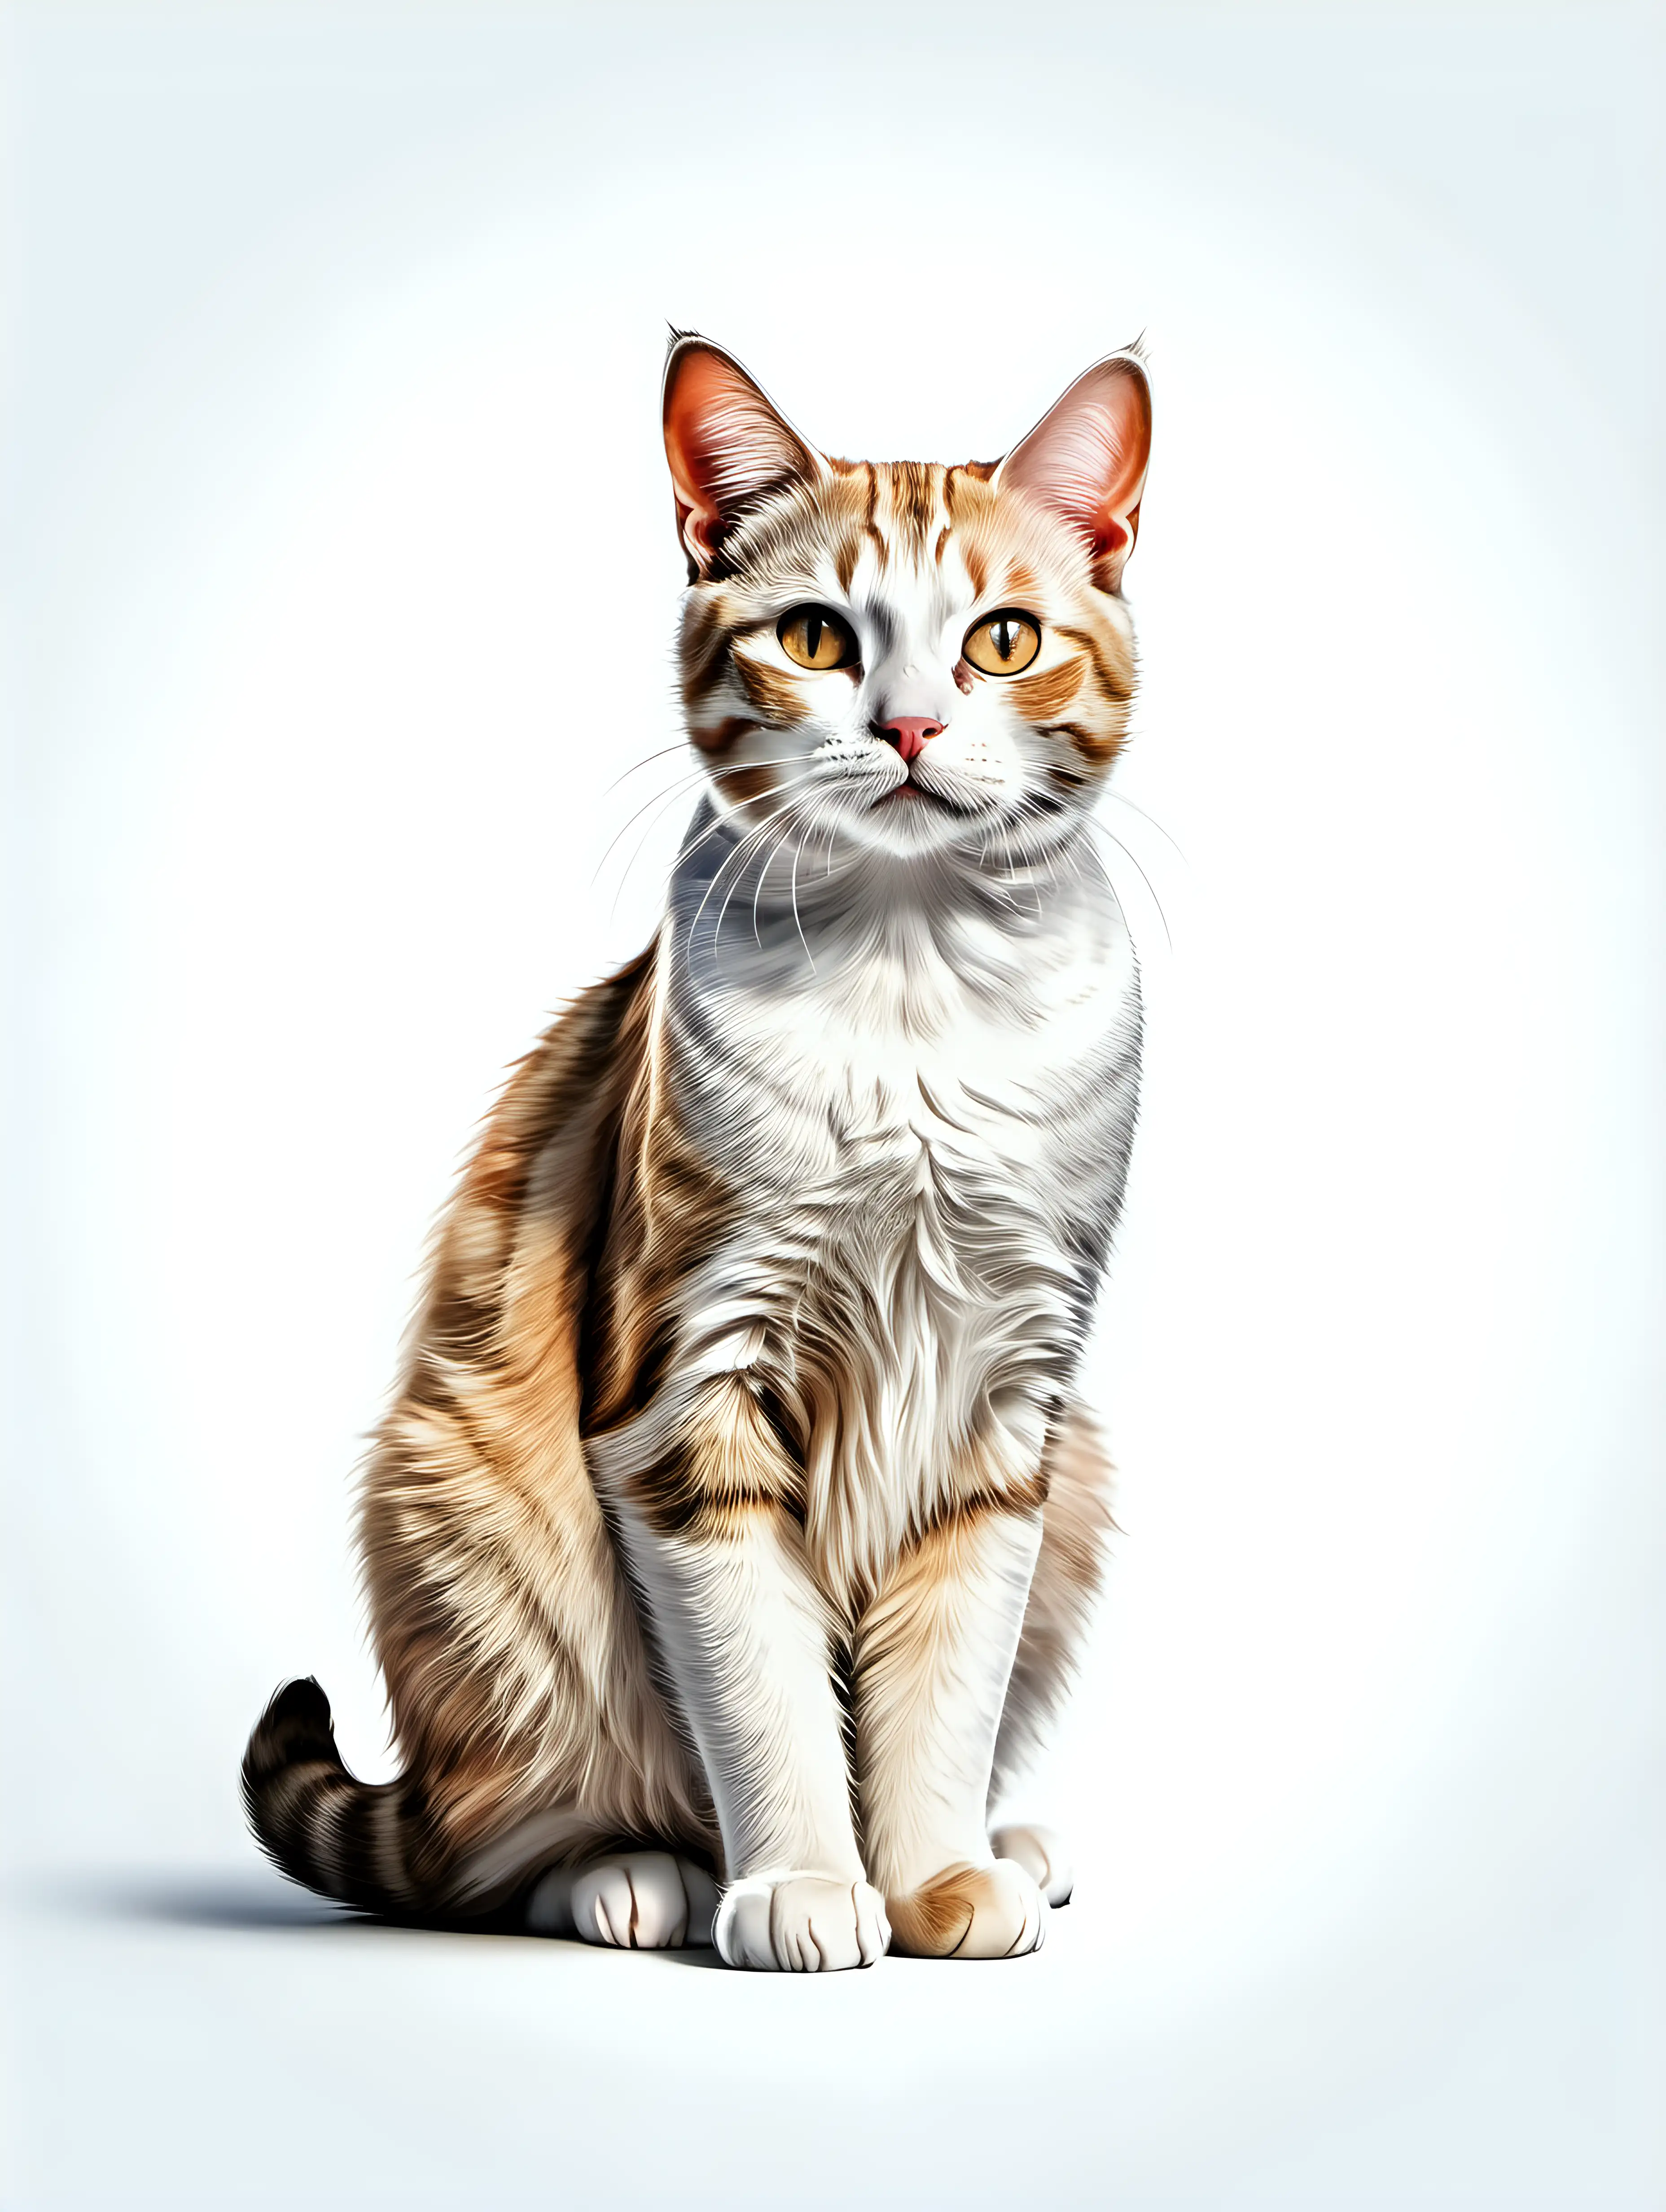 White Cat Illustration on Isolated Background